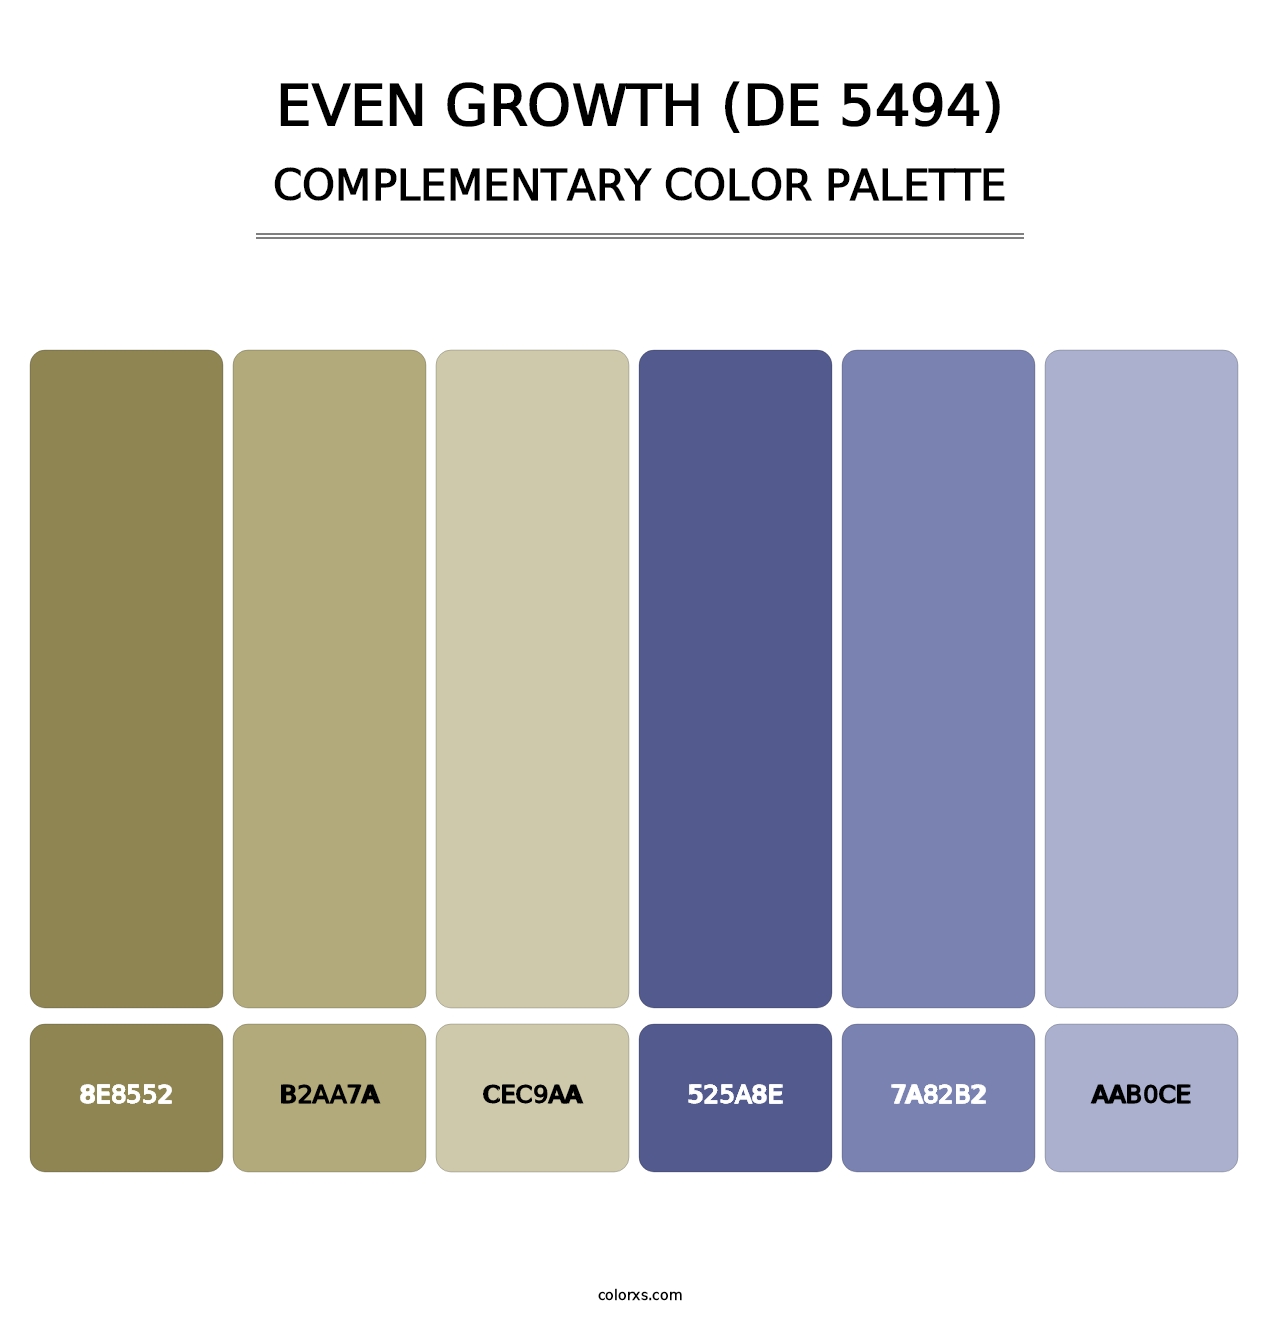 Even Growth (DE 5494) - Complementary Color Palette